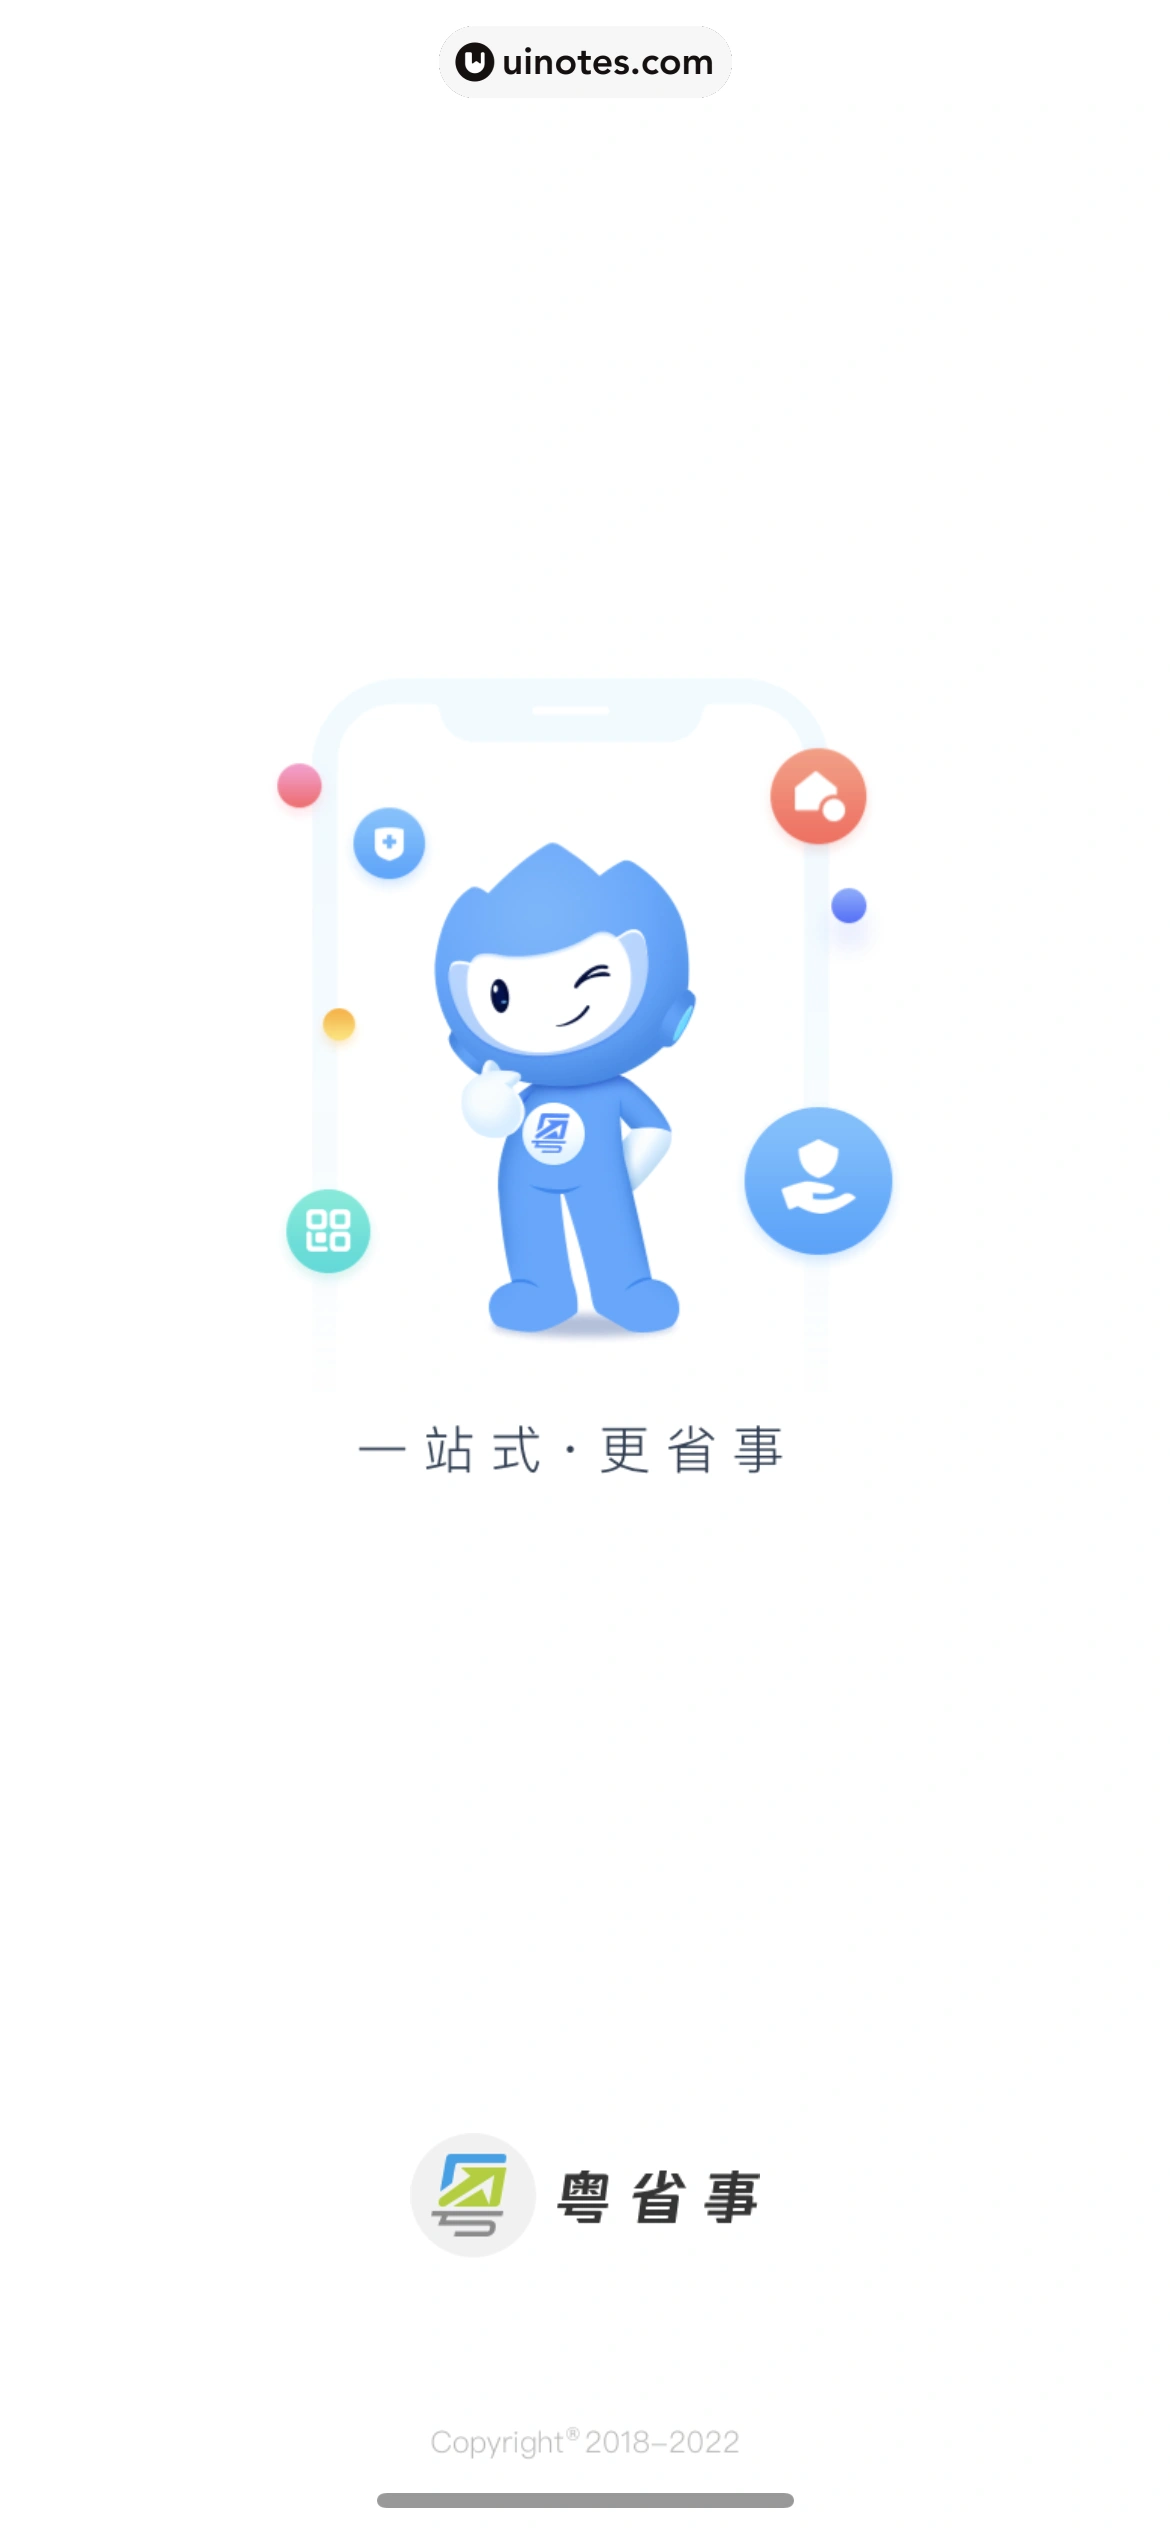 粤省事 App 截图 006 - UI Notes